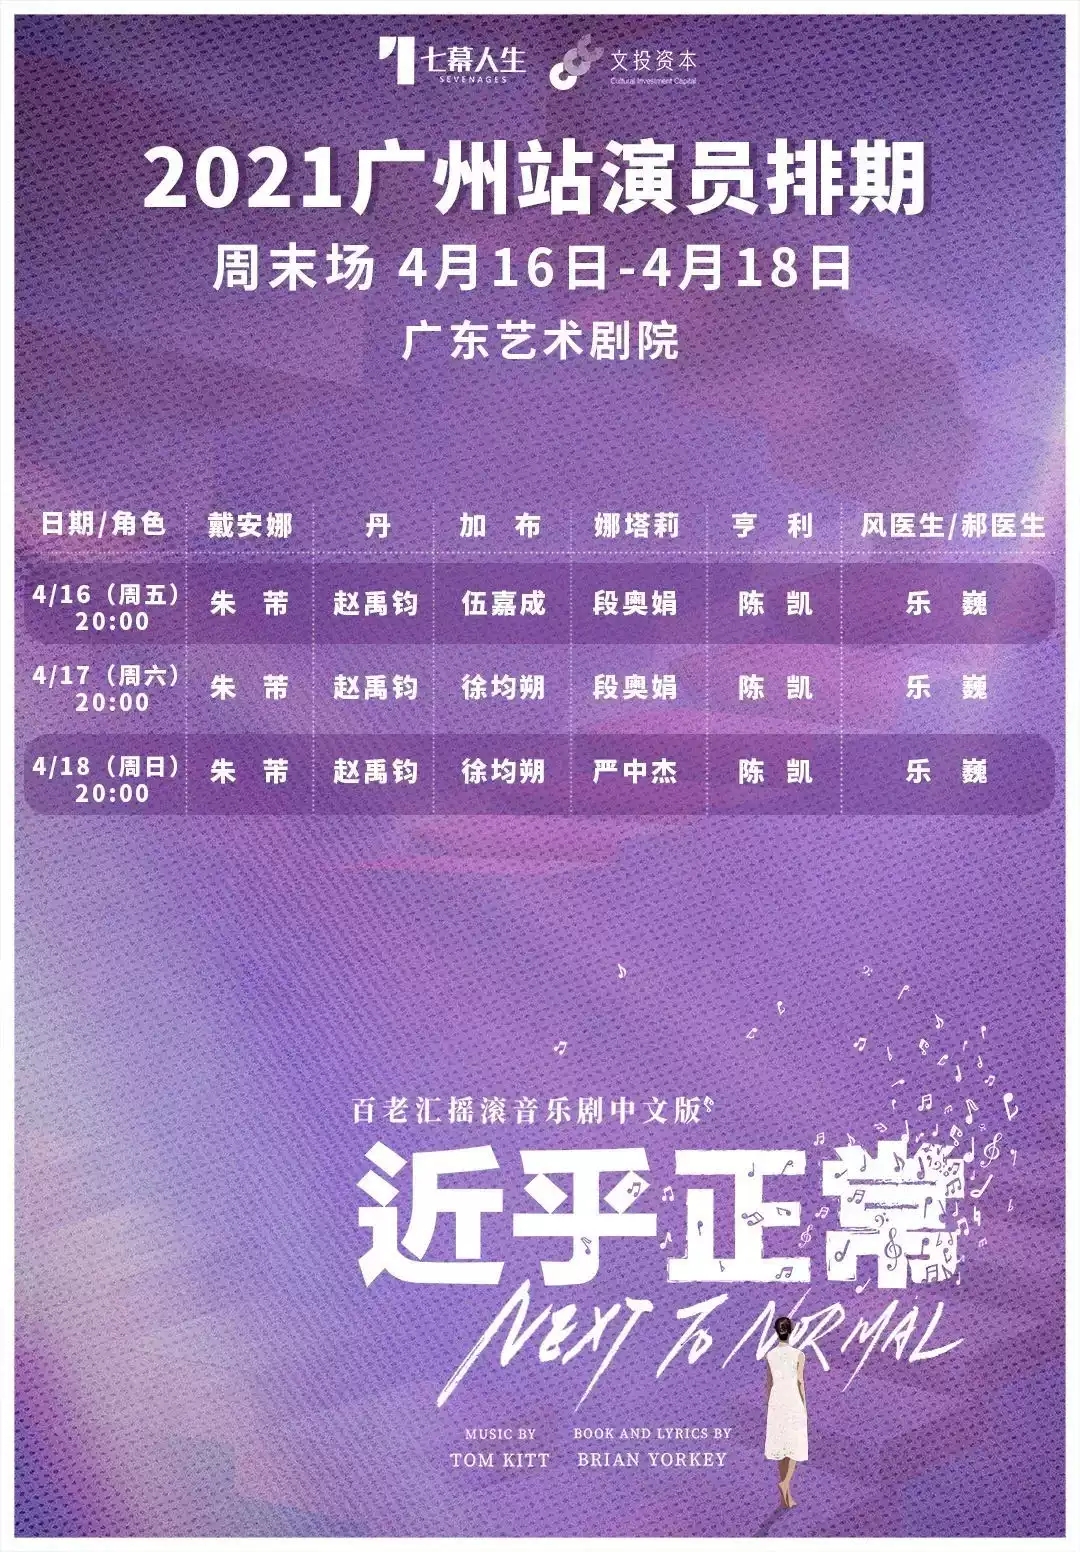 2021七幕人生出品 百老汇摇滚音乐剧《近乎正常》中文版-广州站